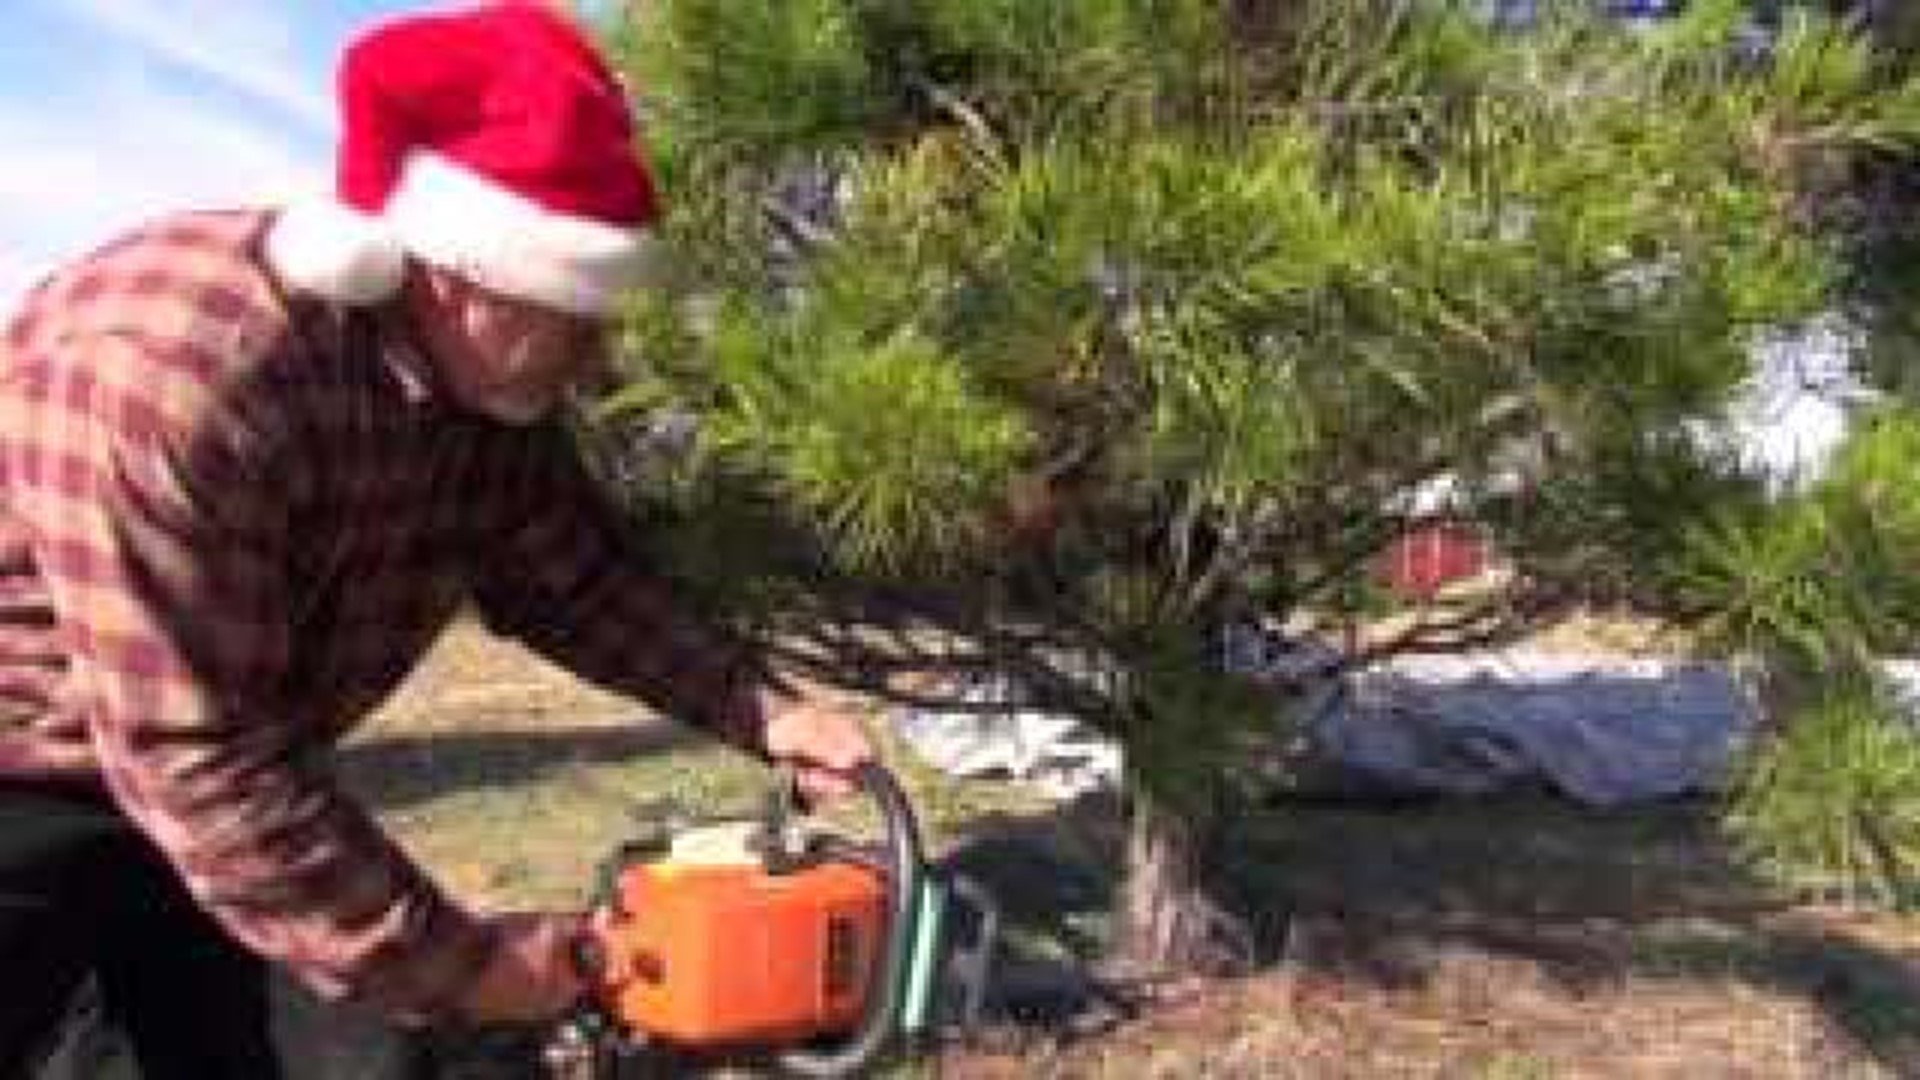 Adventure Arkansas: Pine Grove Christmas Tree Farm ...